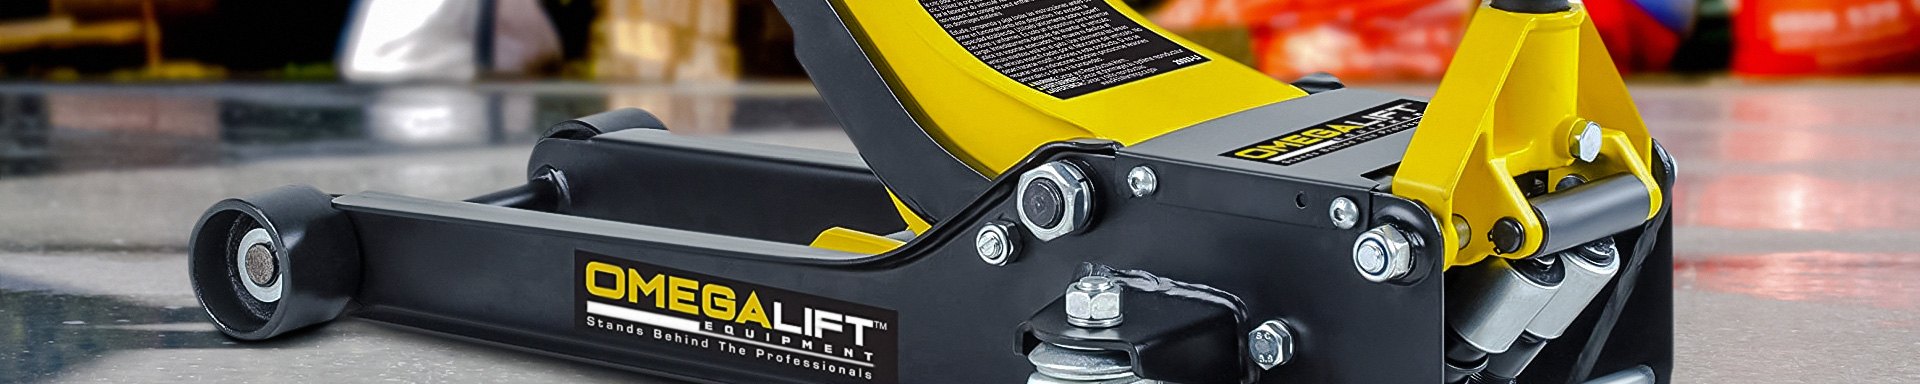 Omega Lift Equipment Hydraulic Presses